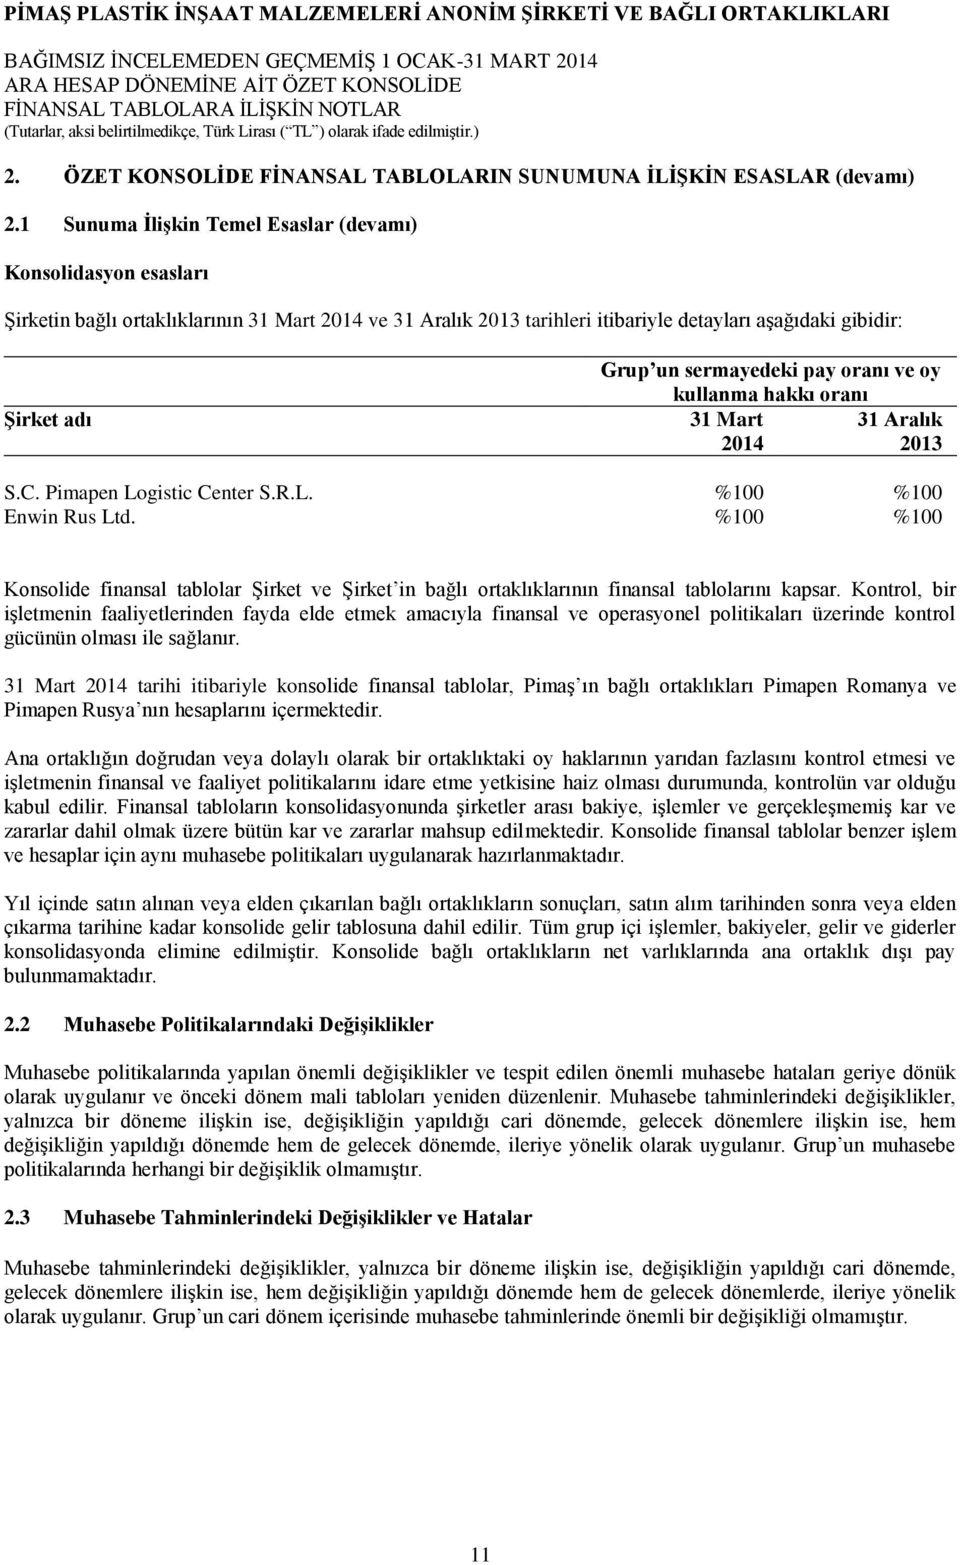 sermayedeki pay oranı ve oy kullanma hakkı oranı 31 Mart 31 Aralık 2014 2013 S.C. Pimapen Logistic Center S.R.L. %100 %100 Enwin Rus Ltd.